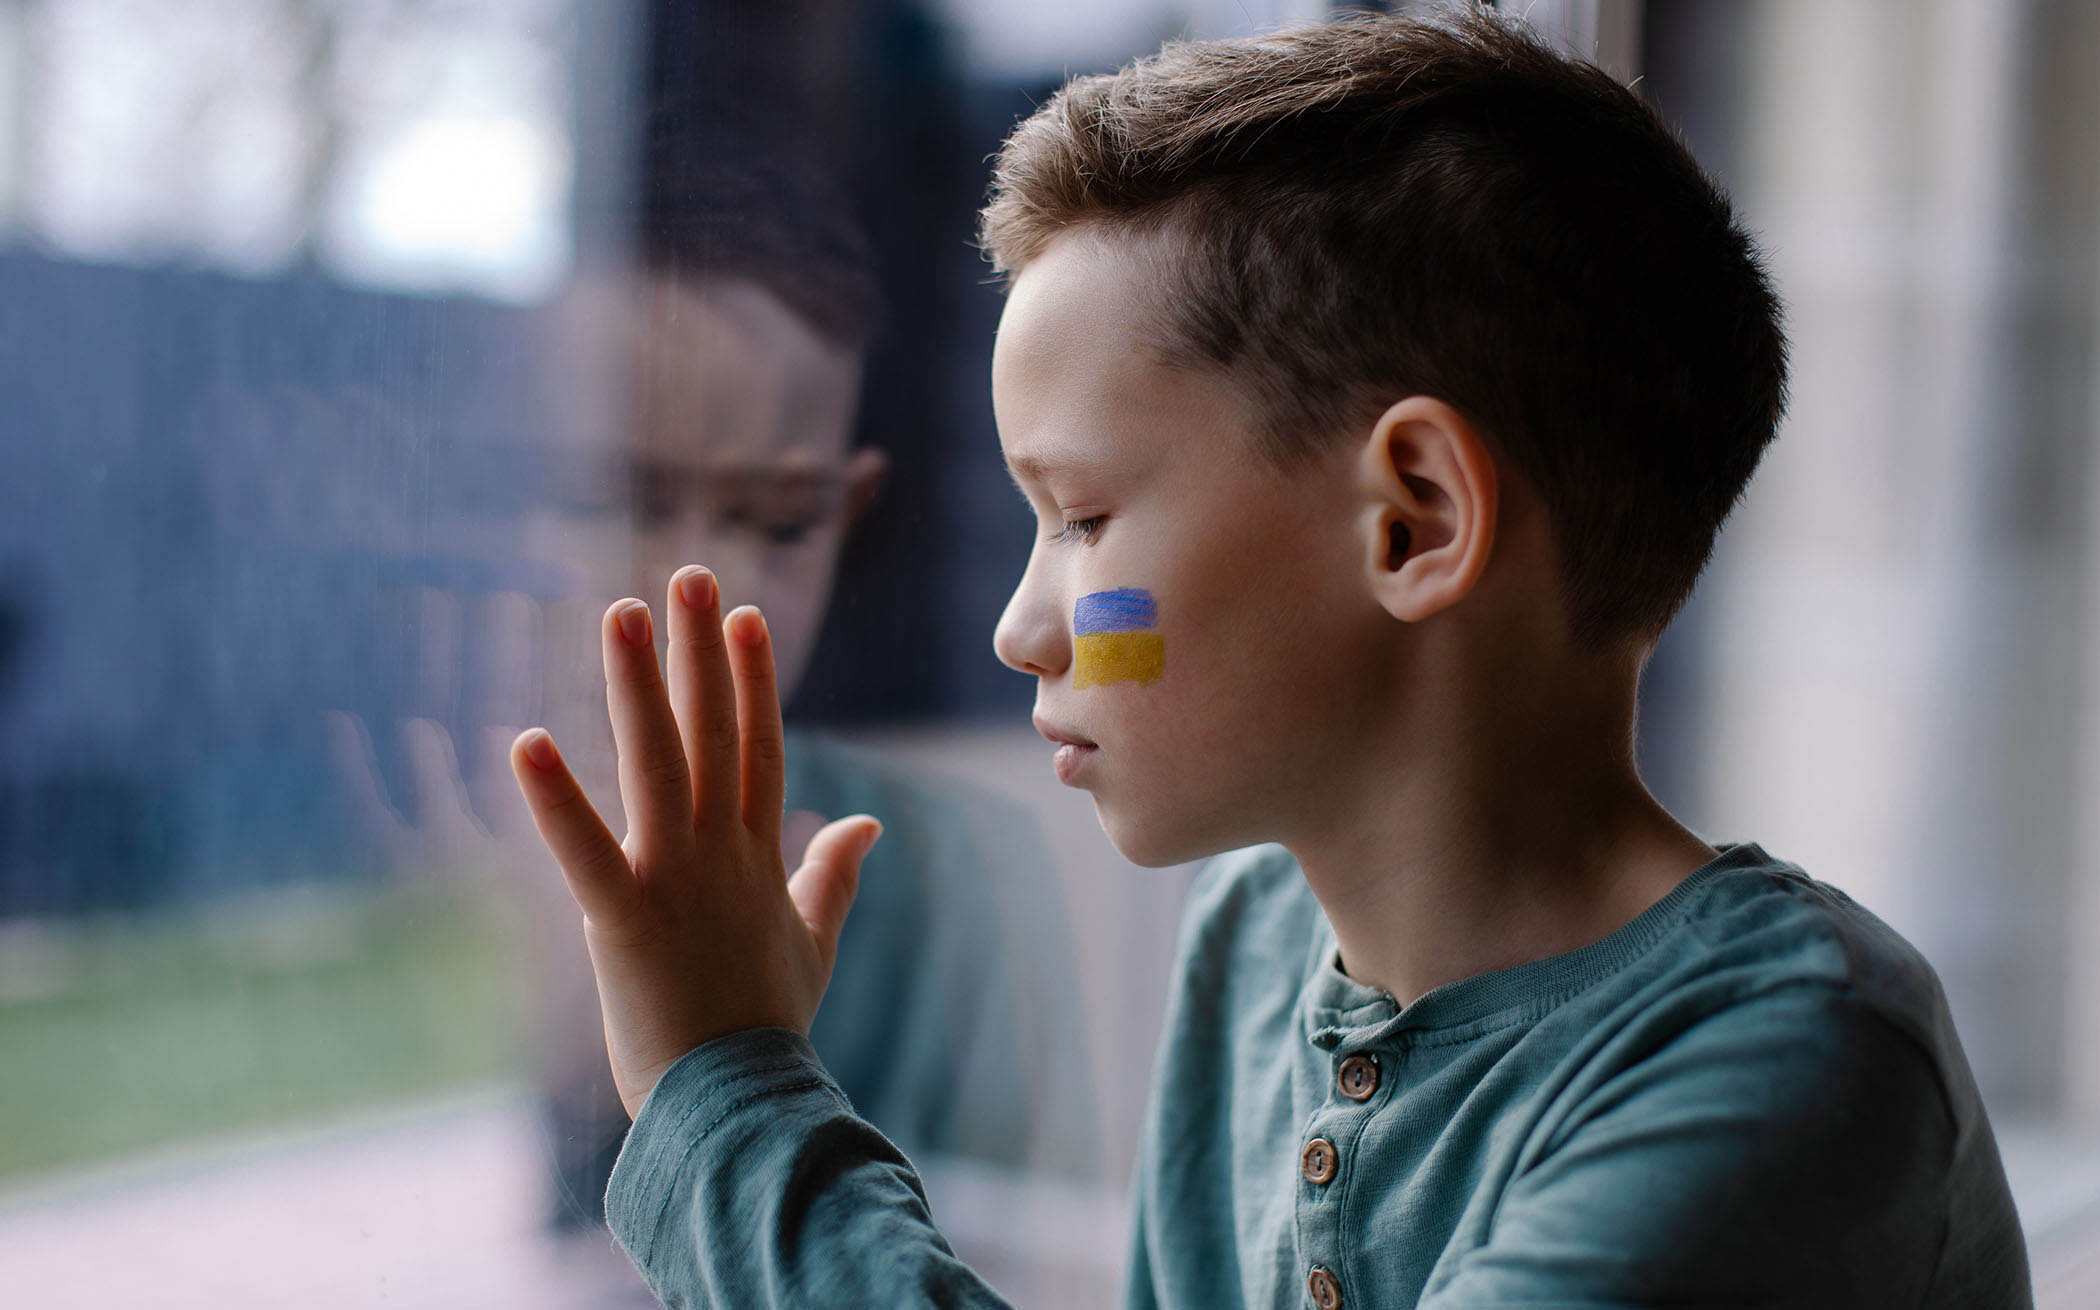 Foto: Junge am Fenster mit Ukraine-Flagge auf der Wange